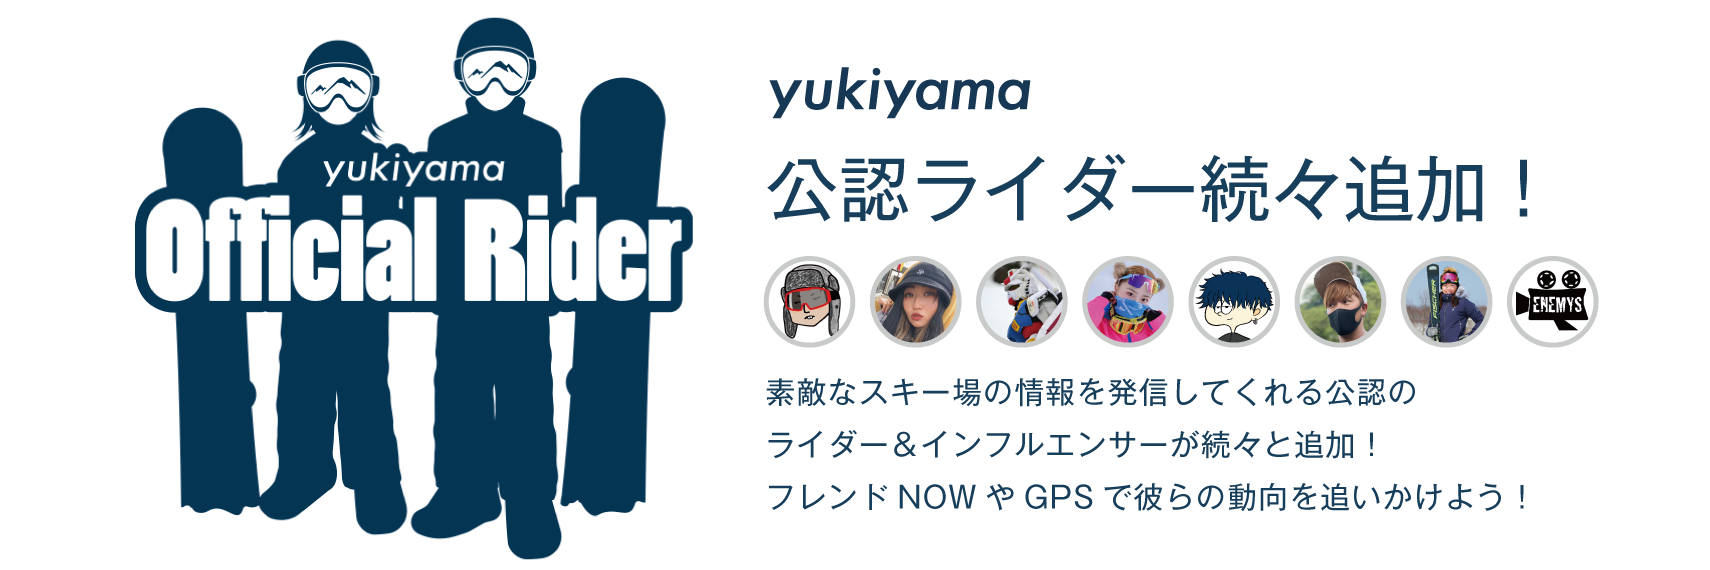 yukiyama公認ライダー続々追加！